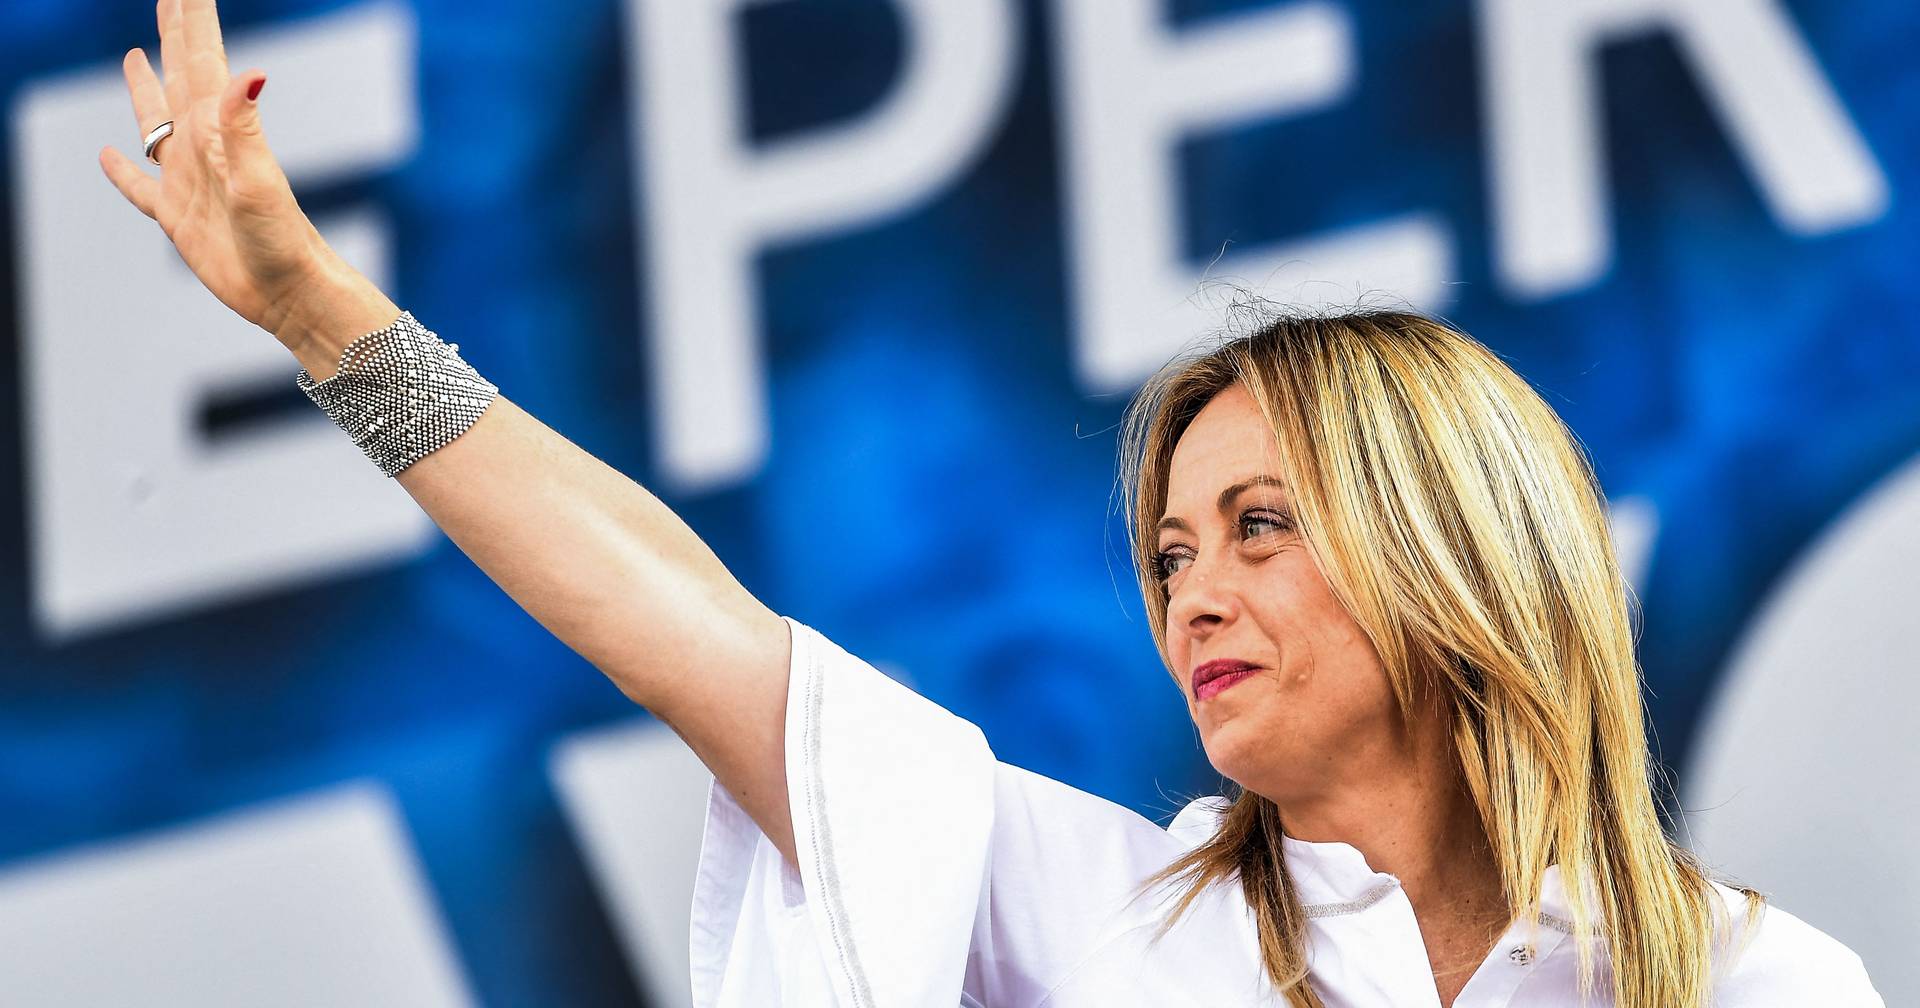 La ministra española de Exteriores dice que el populismo siempre acaba en tragedia